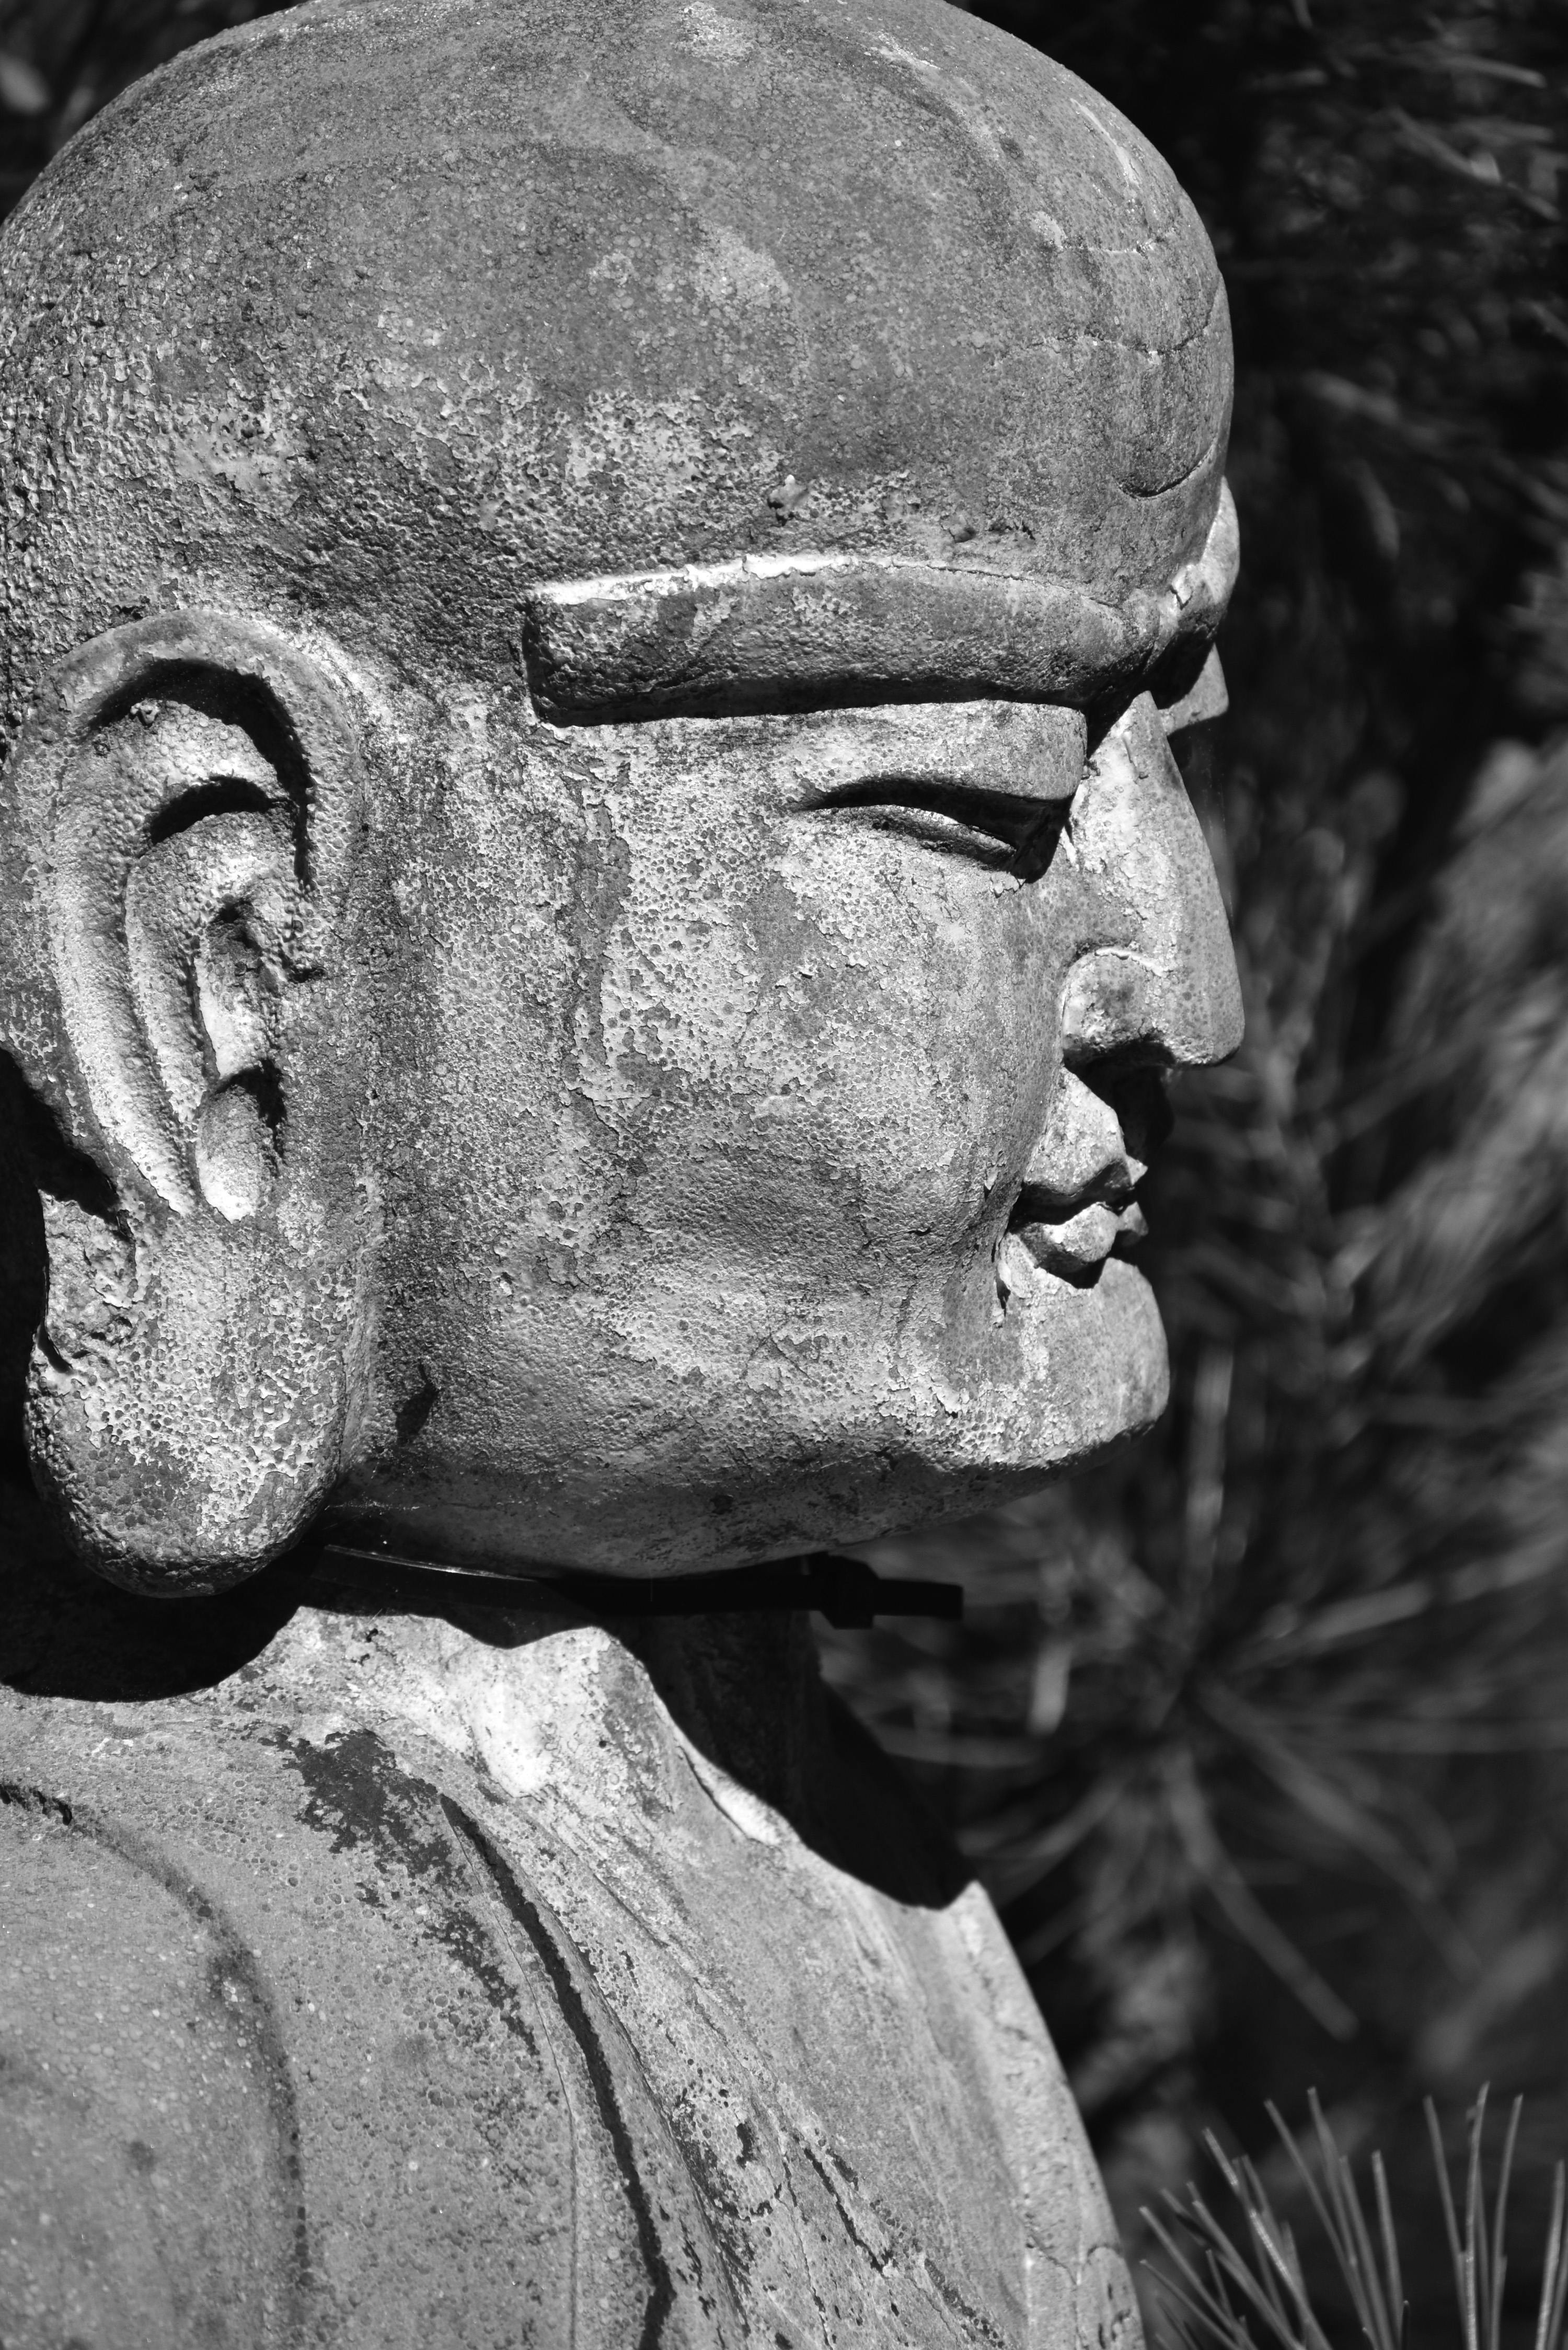 Close-up of a Buddha Statue · Free Stock Photo